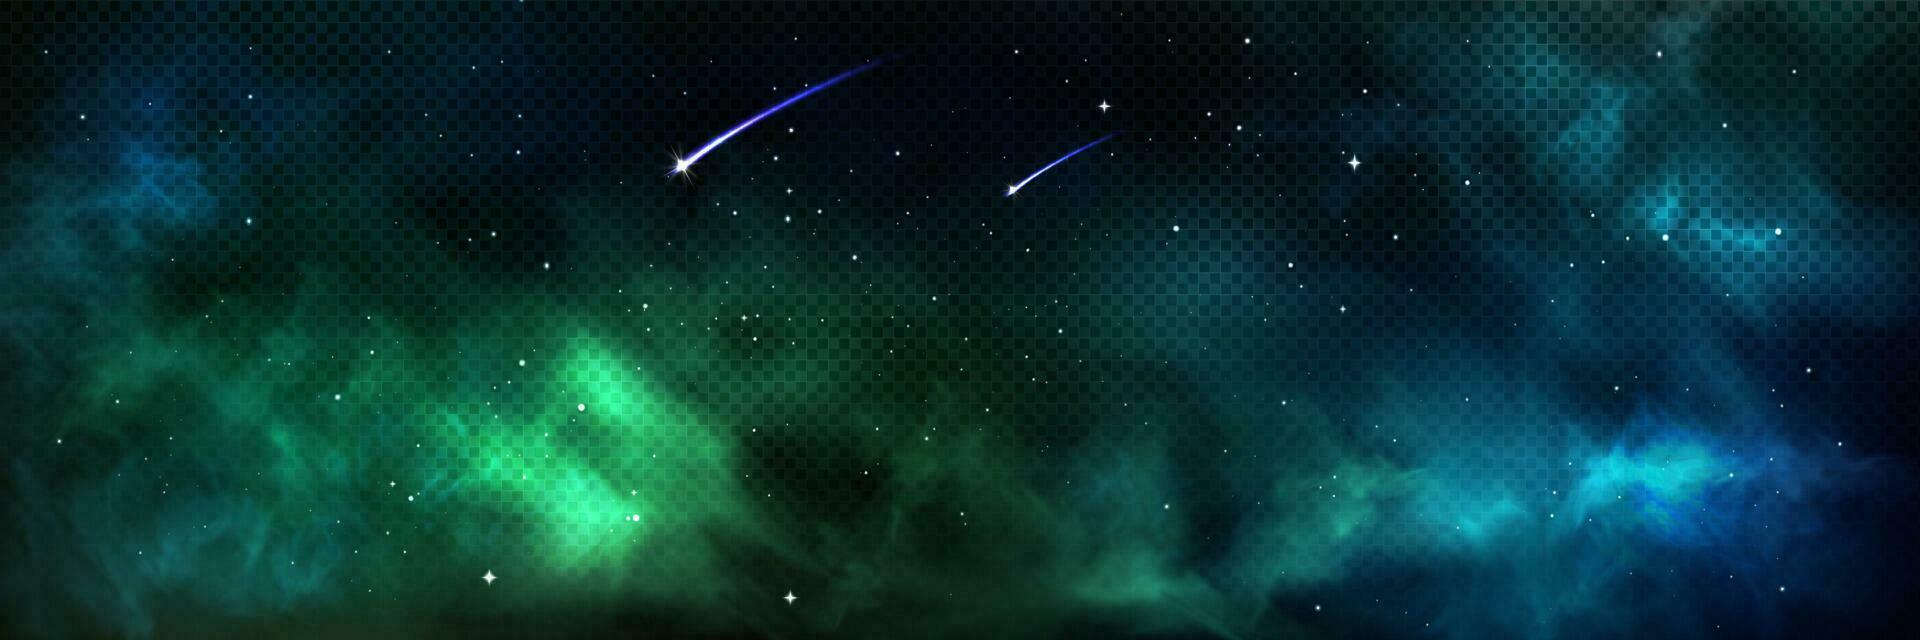 grön nebulosa galax bakgrund abstrakt himmel ljus vektor